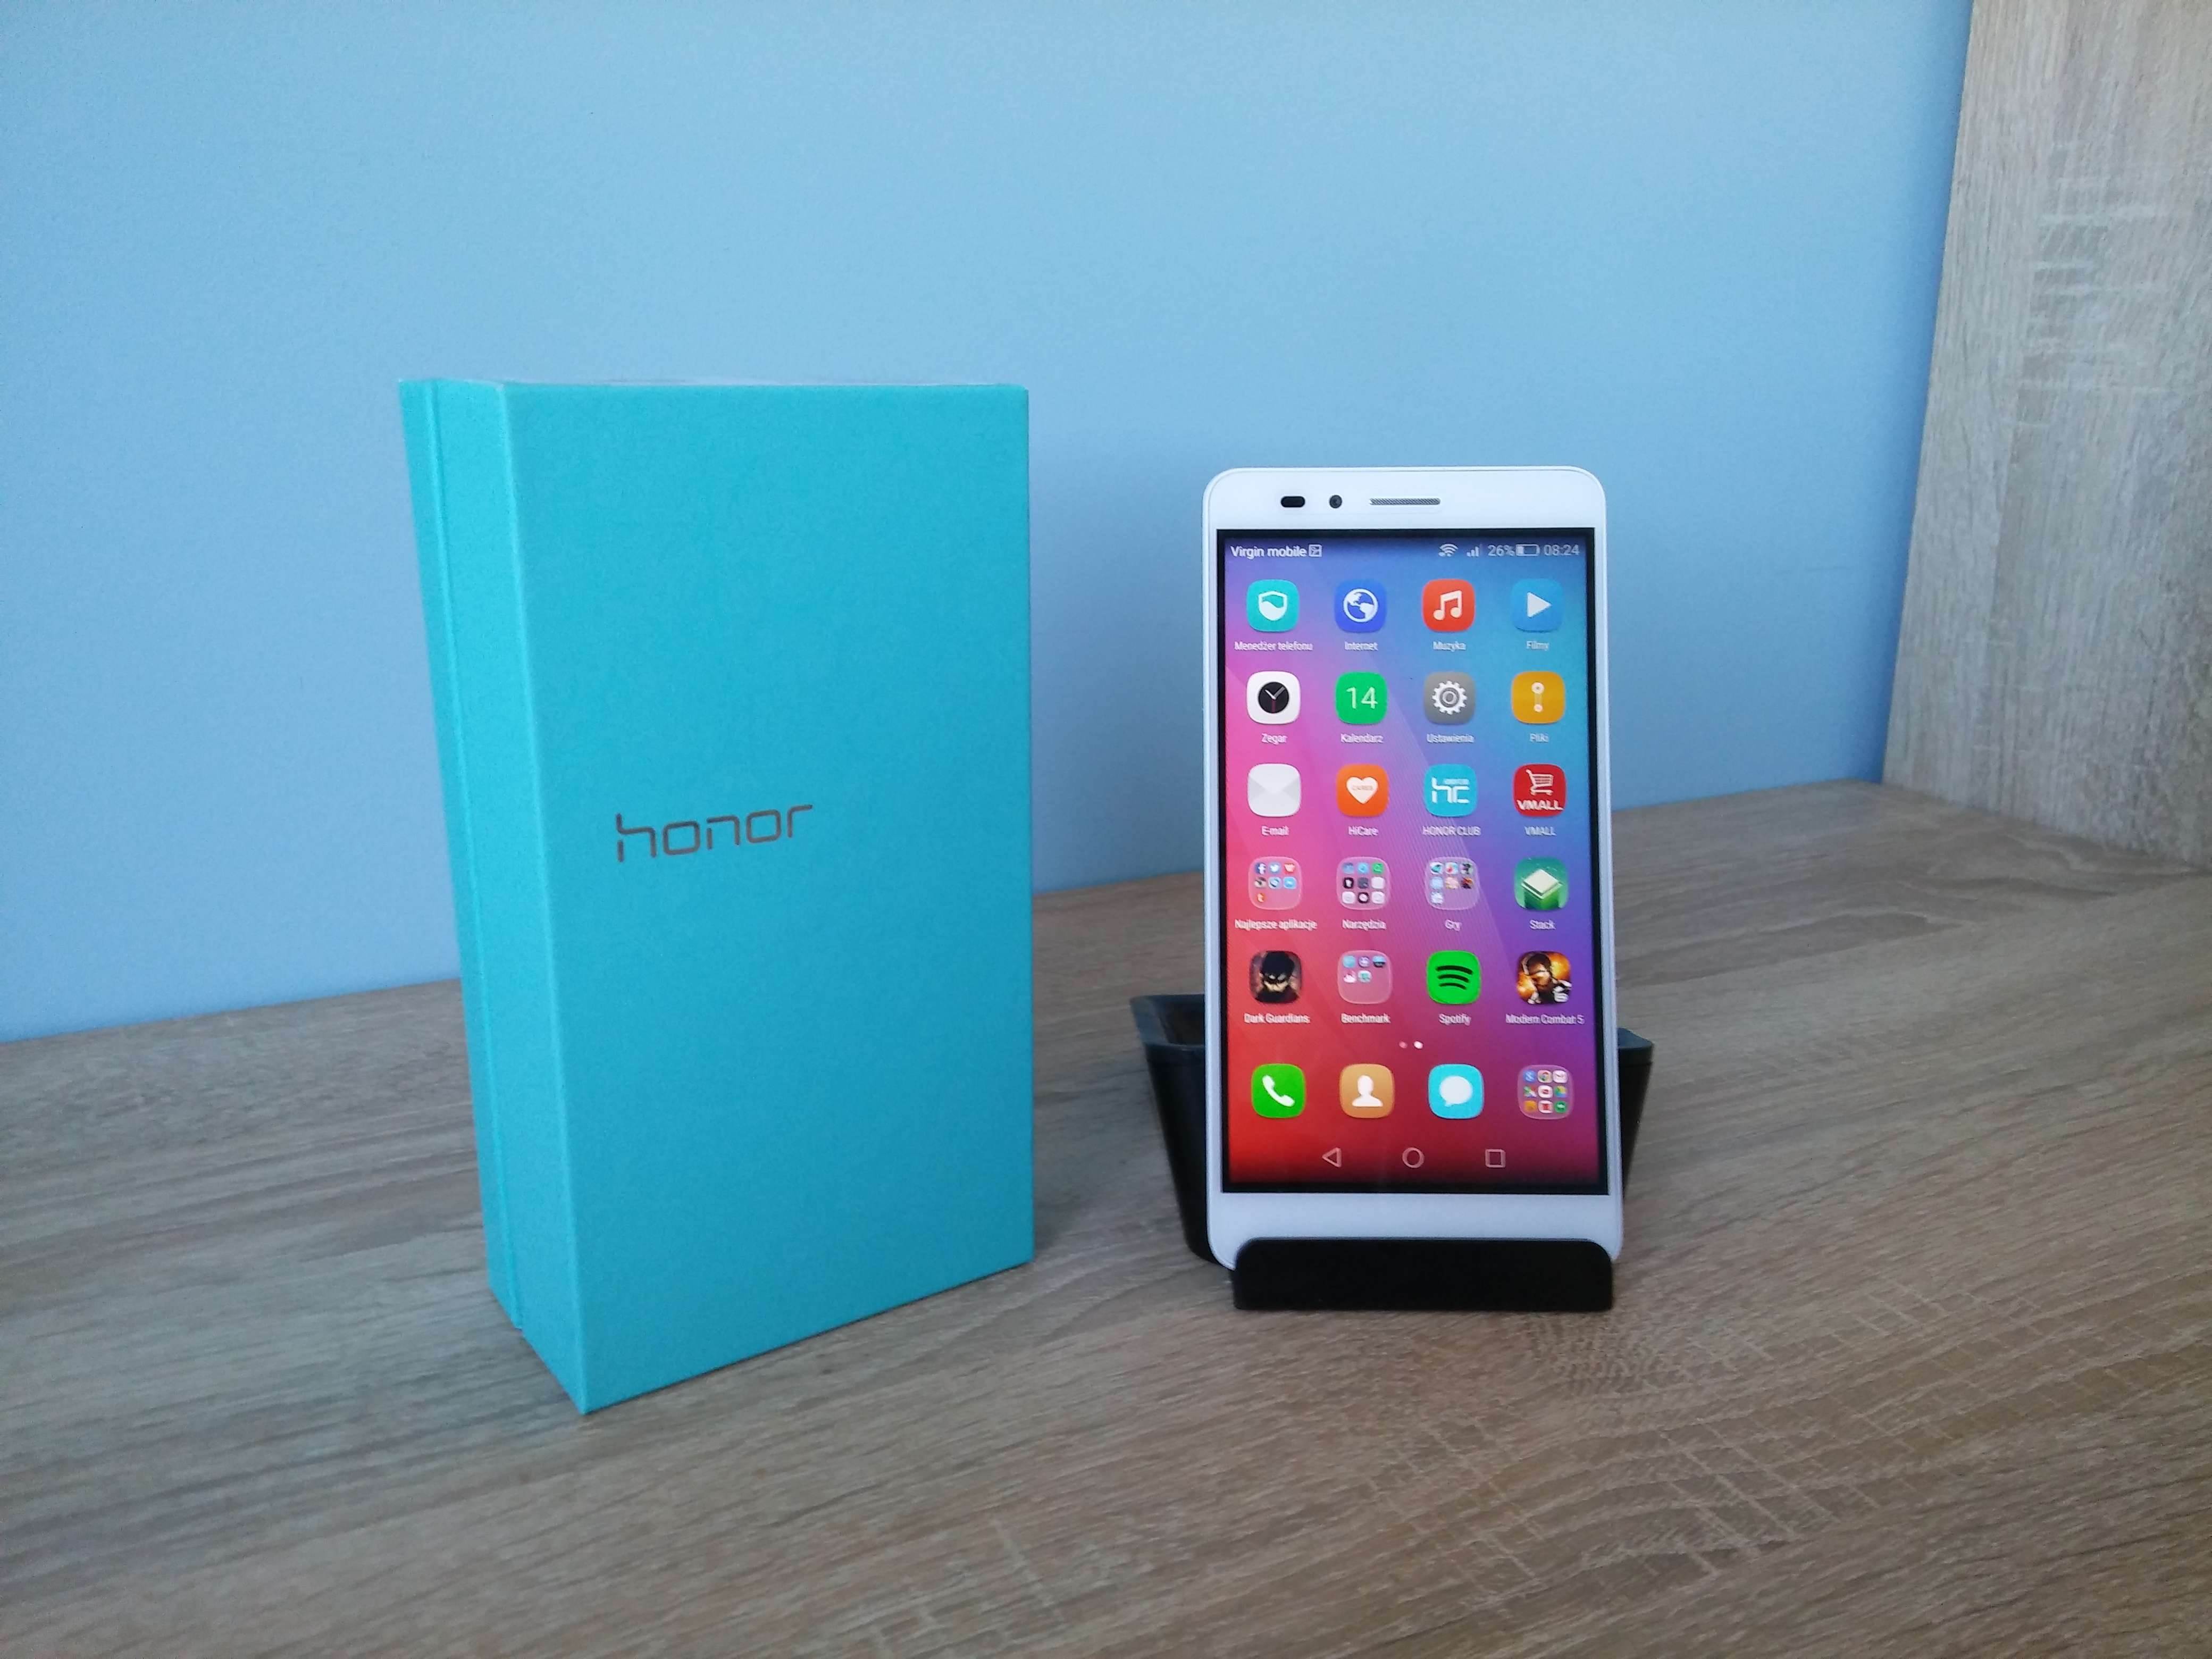 Honor 5X - recenzja urządzenia recenzje, polecane zalety, Youtube, Wideo, wady, Specyfikacja, smartfon Honor 5X, recenzja Honor 5X, polska recenzja Honor 5X, jakie zdjęcia robi Honor 5X, jakie filmy nagrywa Honor 5X, Honor 5X, cena Honor 5X  W tym roku zadebiutowało wiele sztandarowych modeli urządzeń mobilnych, ale to nie znaczy, że reszta segmentów nie jest eksploatowana. Szczególną uwagą należy obdarzyć wydanego niedawno Honora 5X, który dołącza do budżetowej półki cenowej i ma wiele dobrego do zaoferowania. 20160314 082429